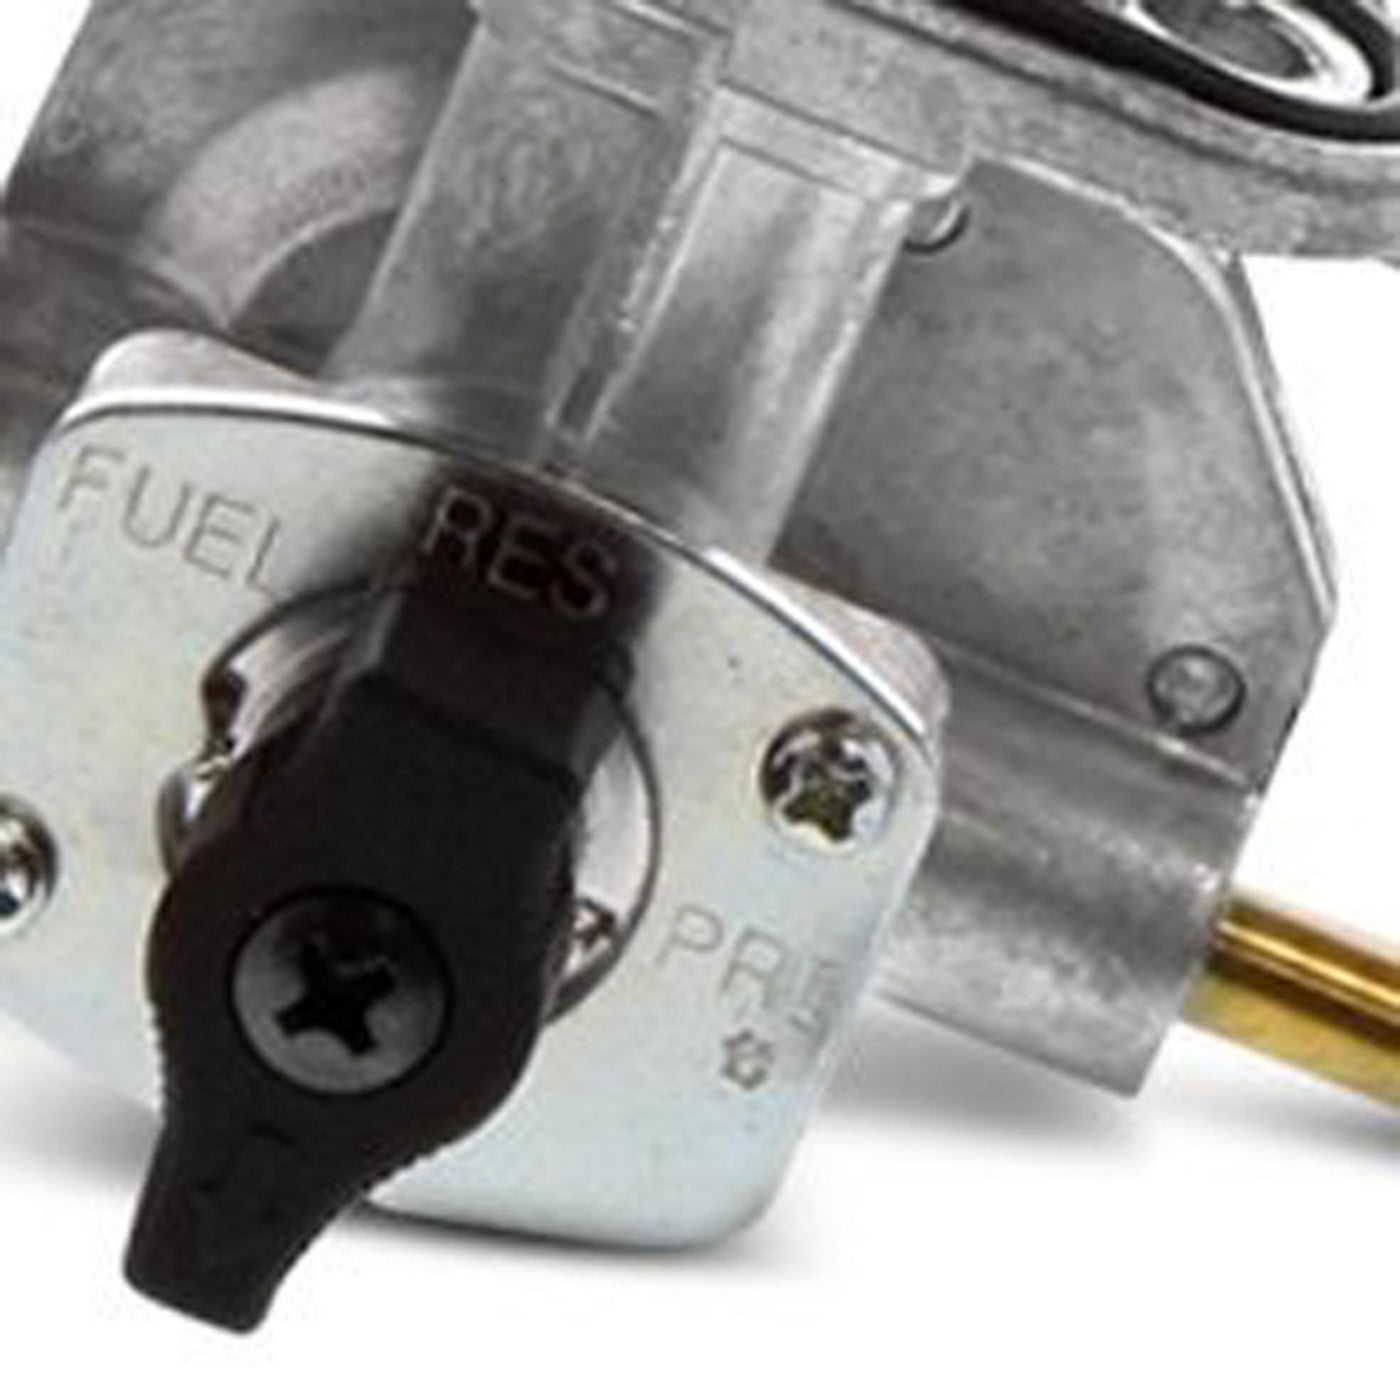 Fuel Star FS101-0123 Fuel Valve Kit #FS101-0123